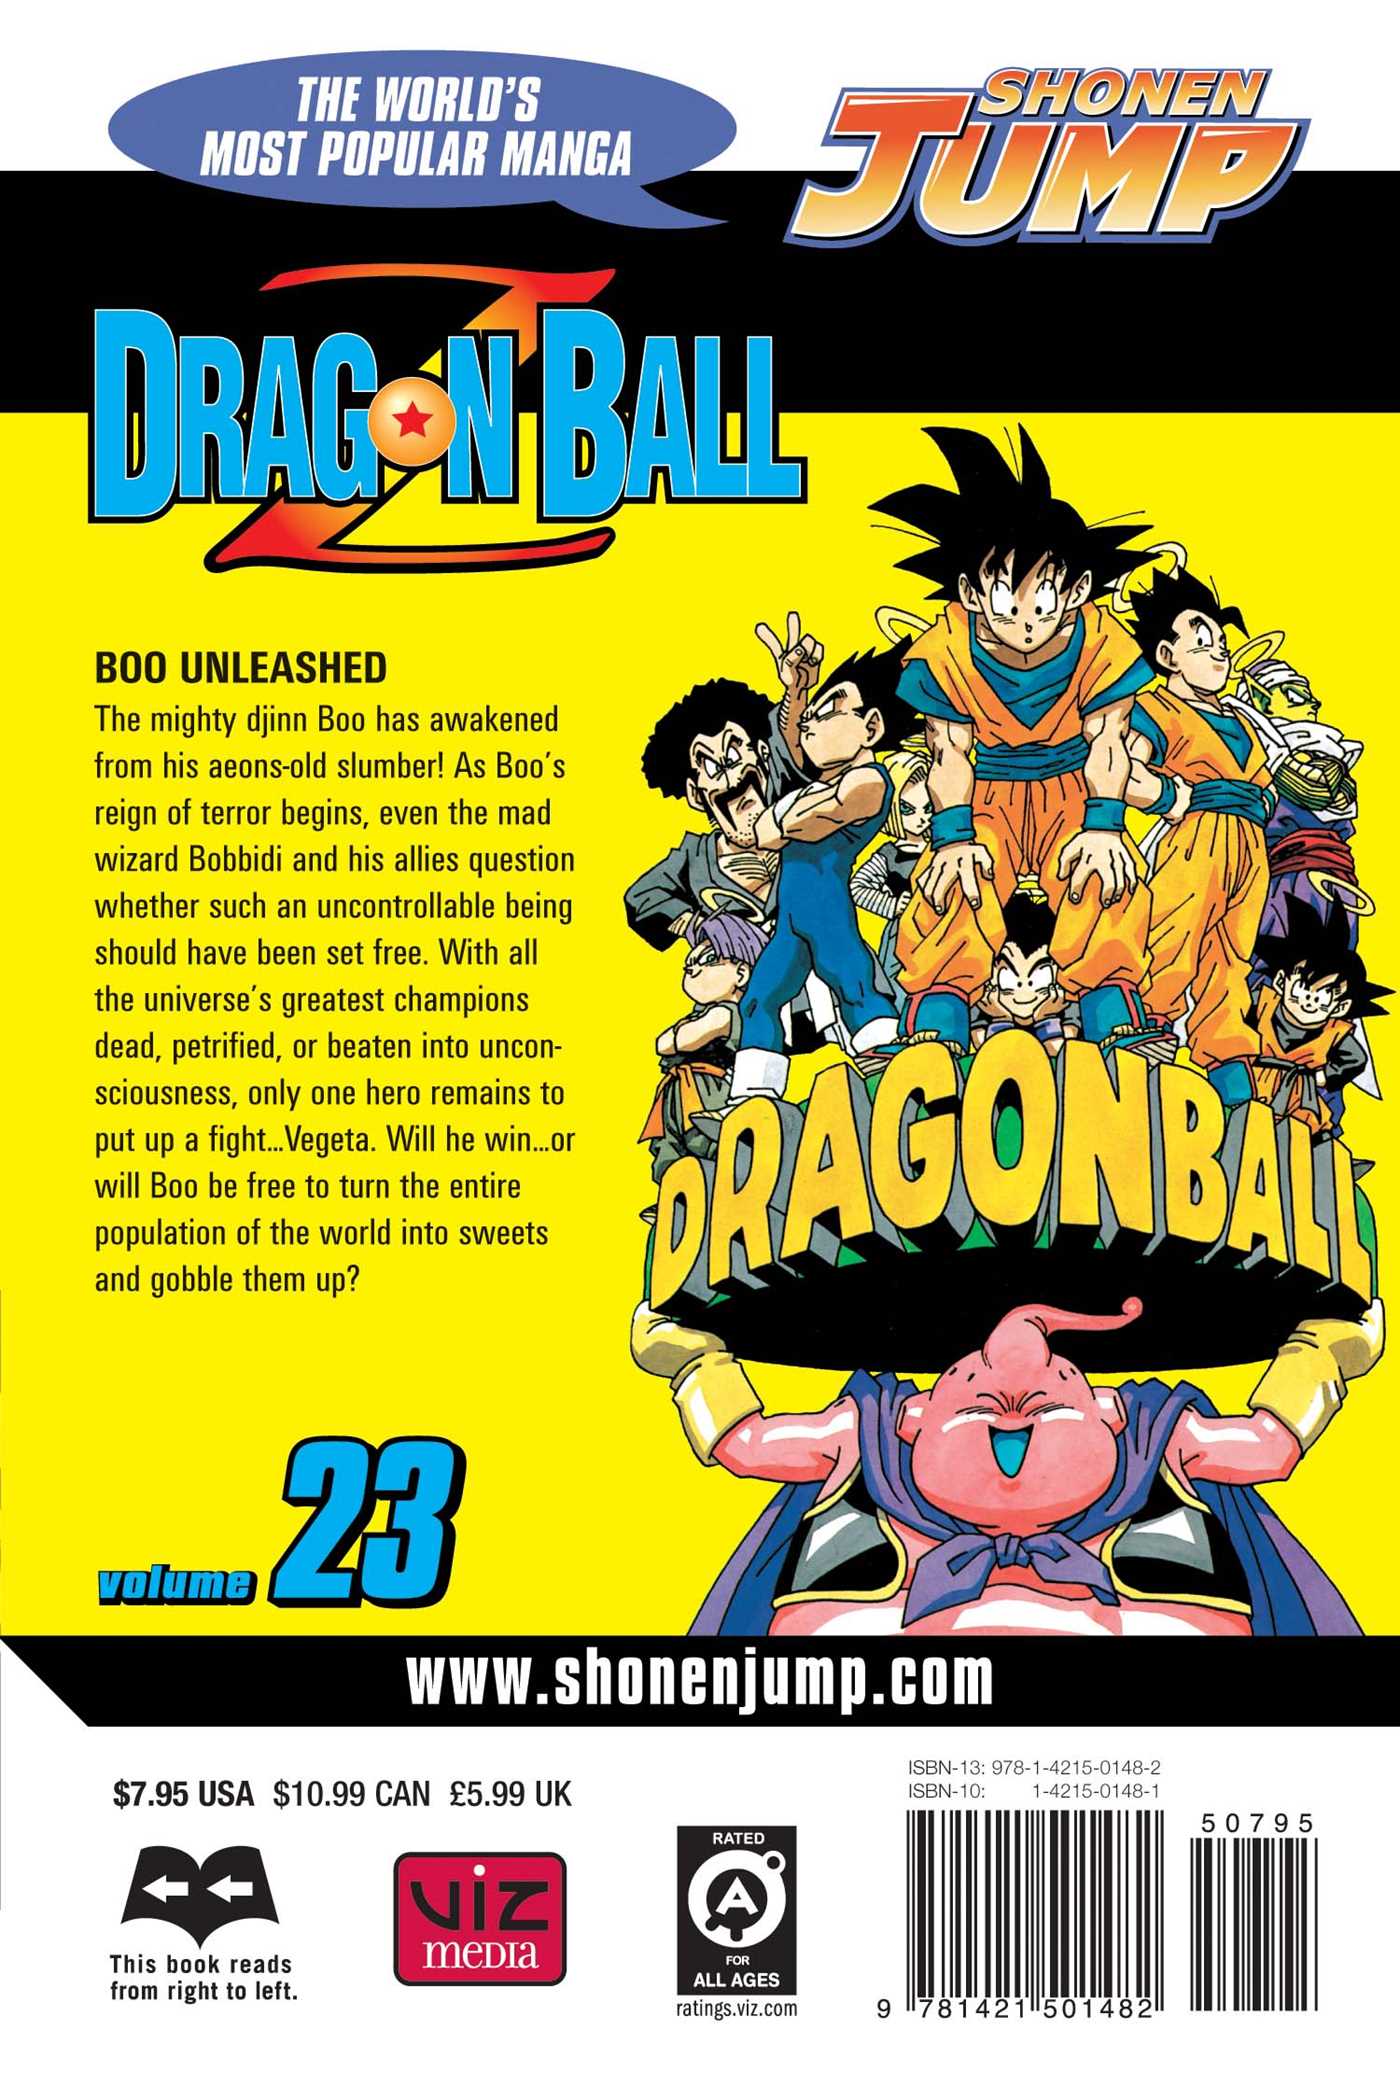 dragon ball z books free